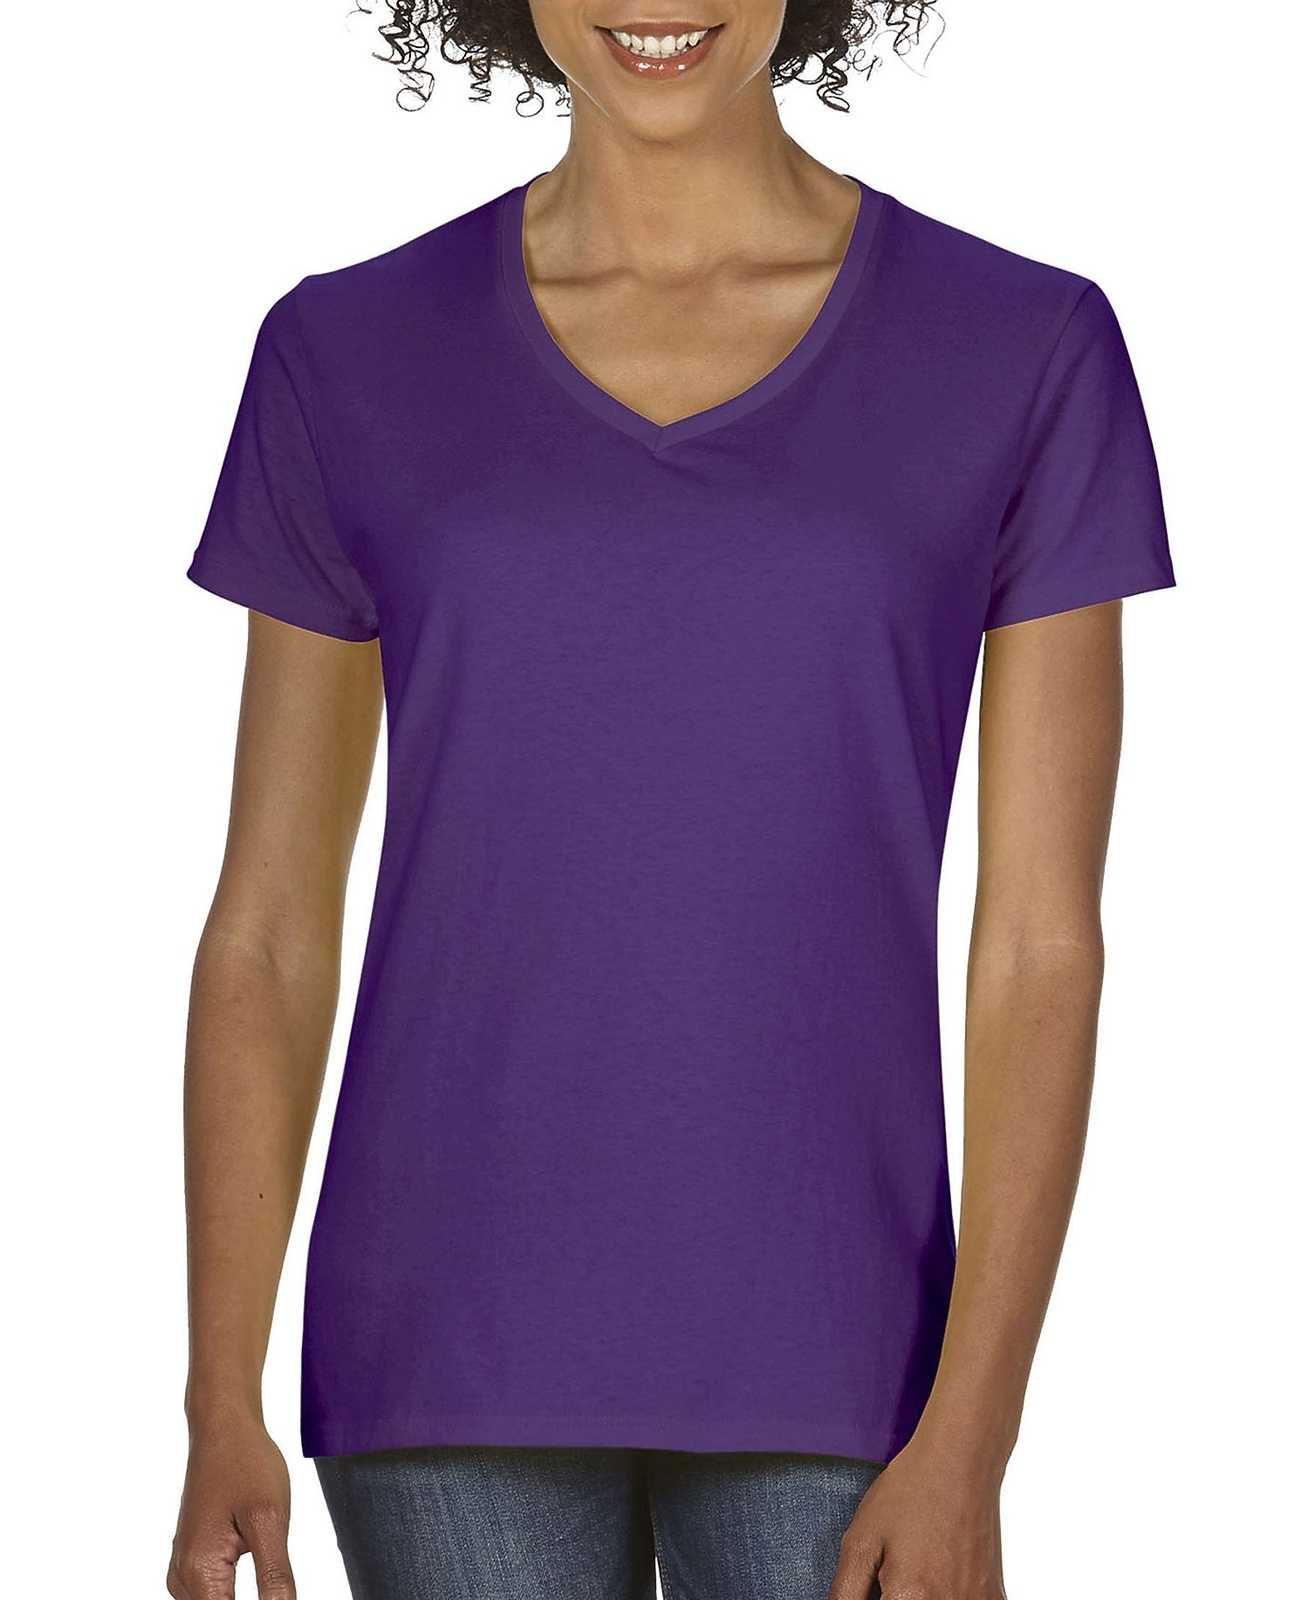 Gildan 5V00L Ladies Heavy Cotton 100% Cotton V-Neck T-Shirt - Purple - HIT a Double